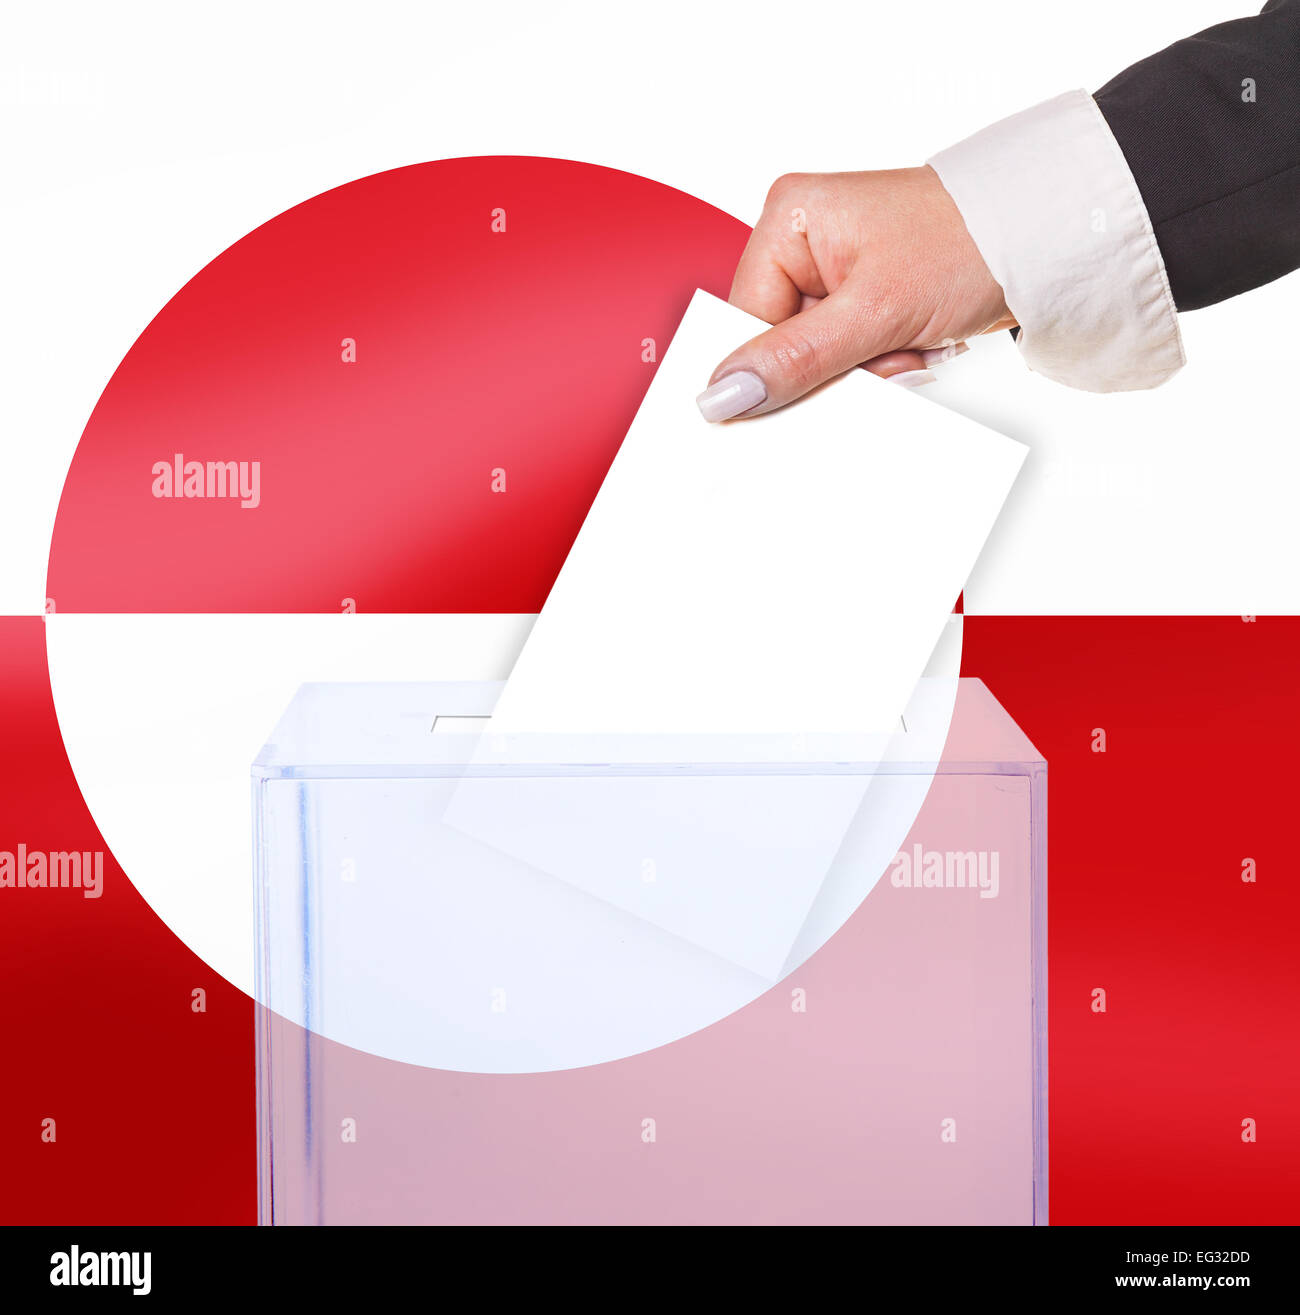 Wahlhilfe Abstimmung durch Stimmzettel, unter der Flagge von Grönland Stockfoto